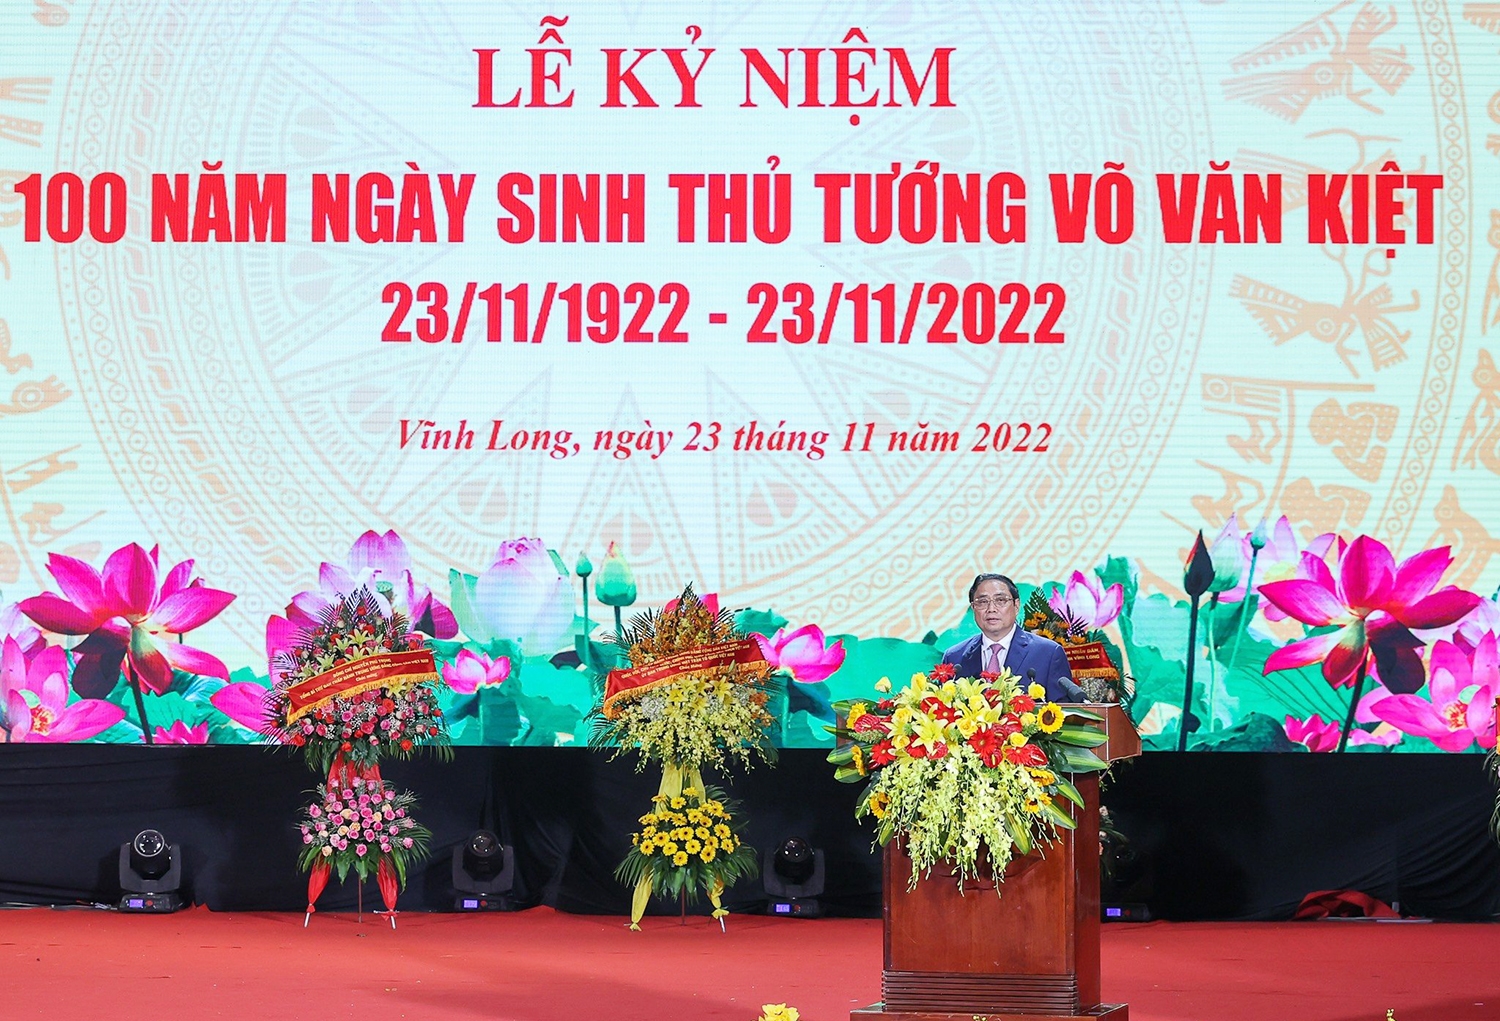 Thủ tướng Chính phủ Phạm Minh Chính phát biểu tại Lễ kỷ niệm 100 năm Ngày sinh Thủ tướng Võ Văn Kiệt